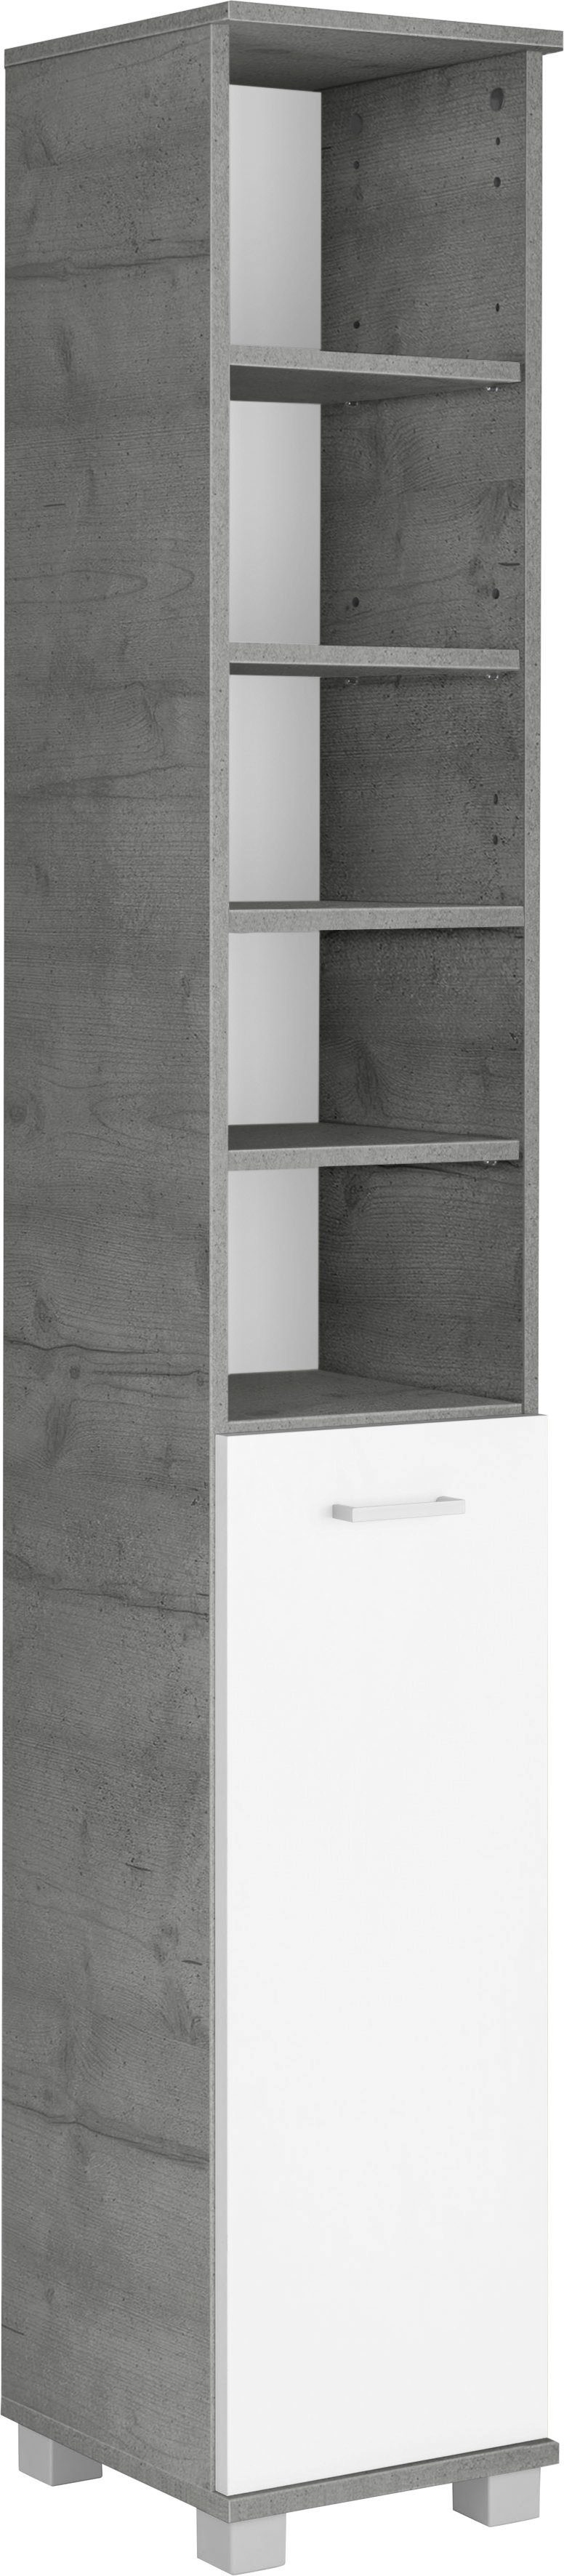 Schildmeyer Hoge kast Mobes Breedte x hoogte: 30,3x193,7 cm, deur aan beide kanten te monteren, badkamerkast met praktische schappen en planken achter de deur